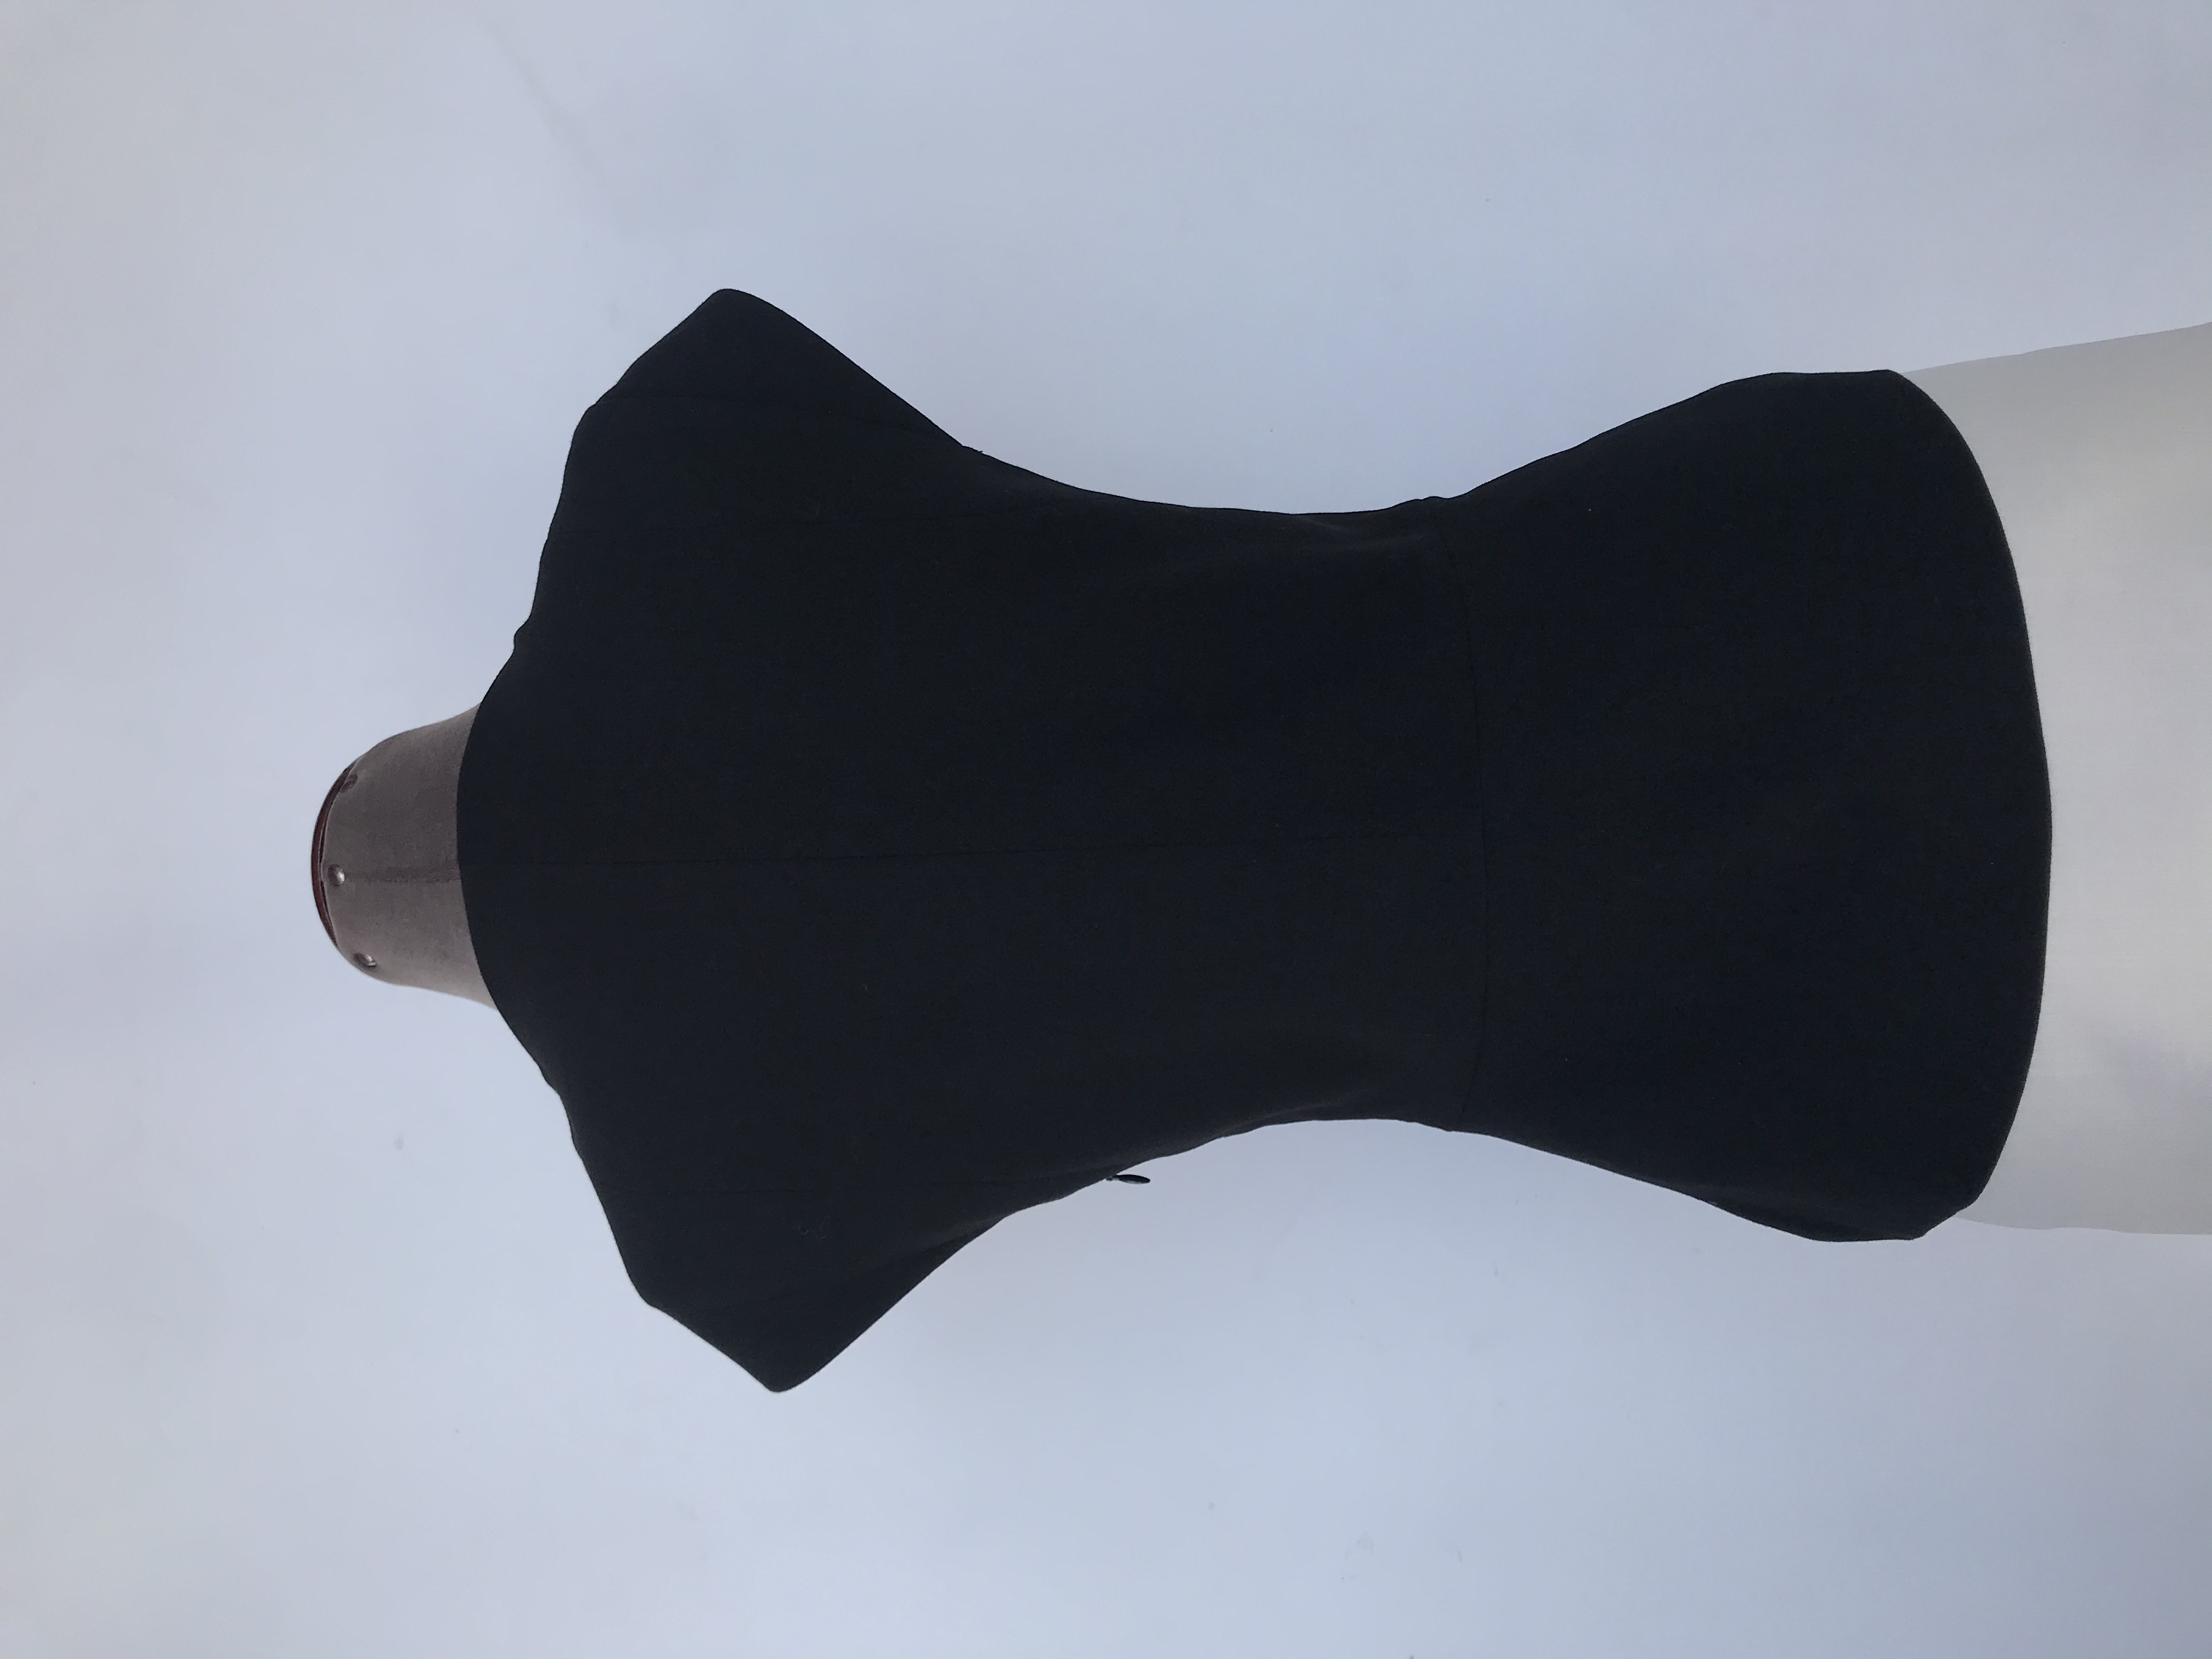 Blusa Mentha & Chocolate tela tipo sastre negra, forrada, cortes delanteros y cierre lateral
Talla M